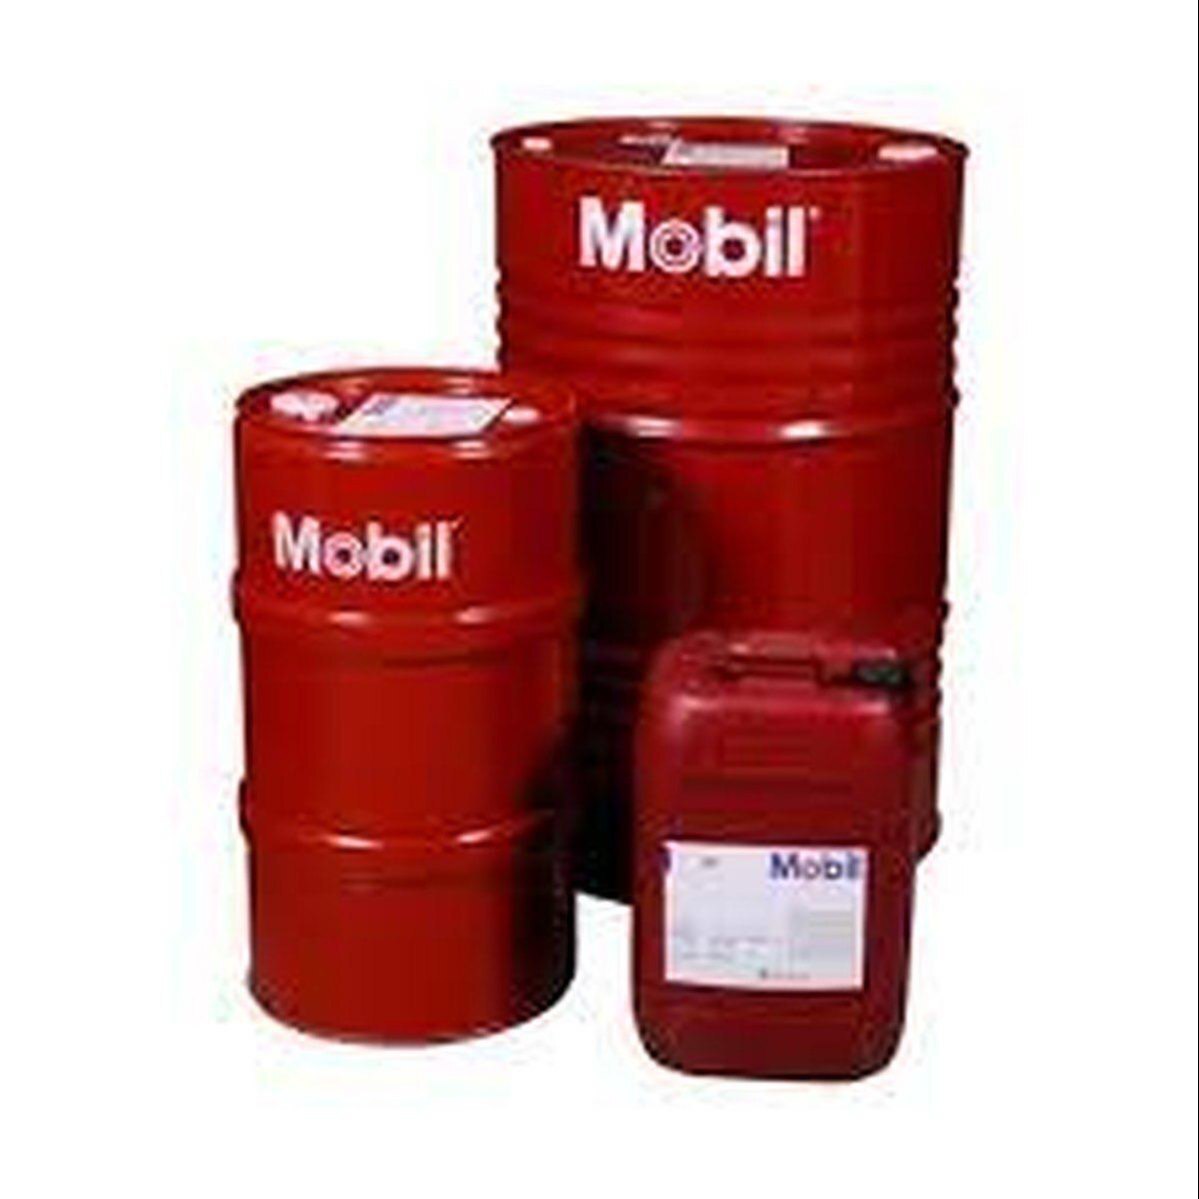 Mobil Compressor Oil